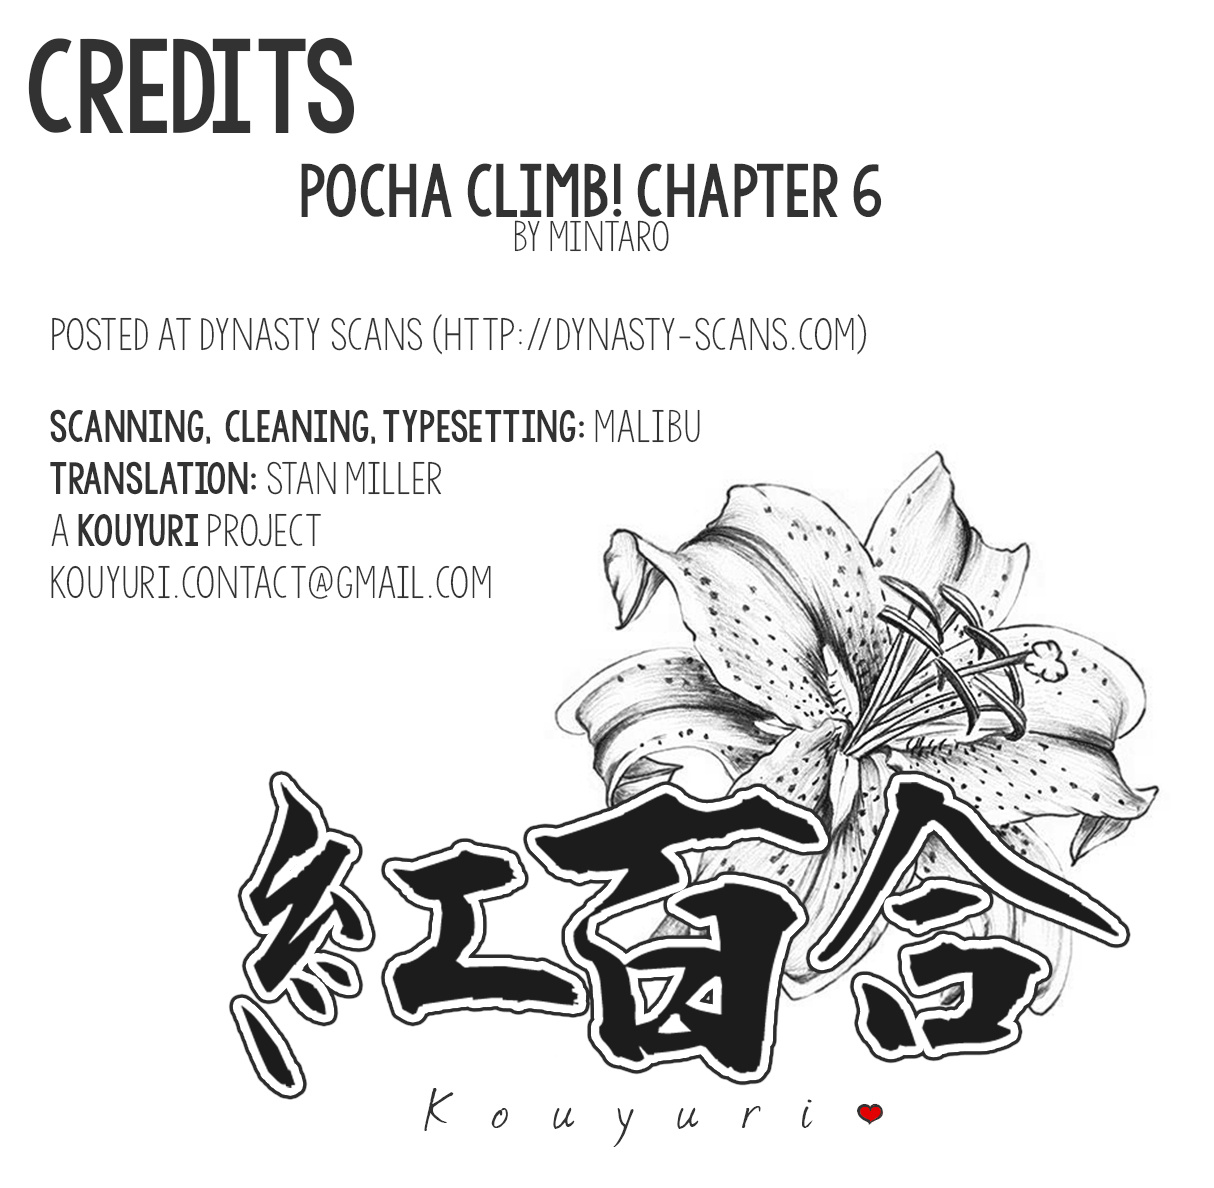 Pocha Climb! Chapter 6 #25